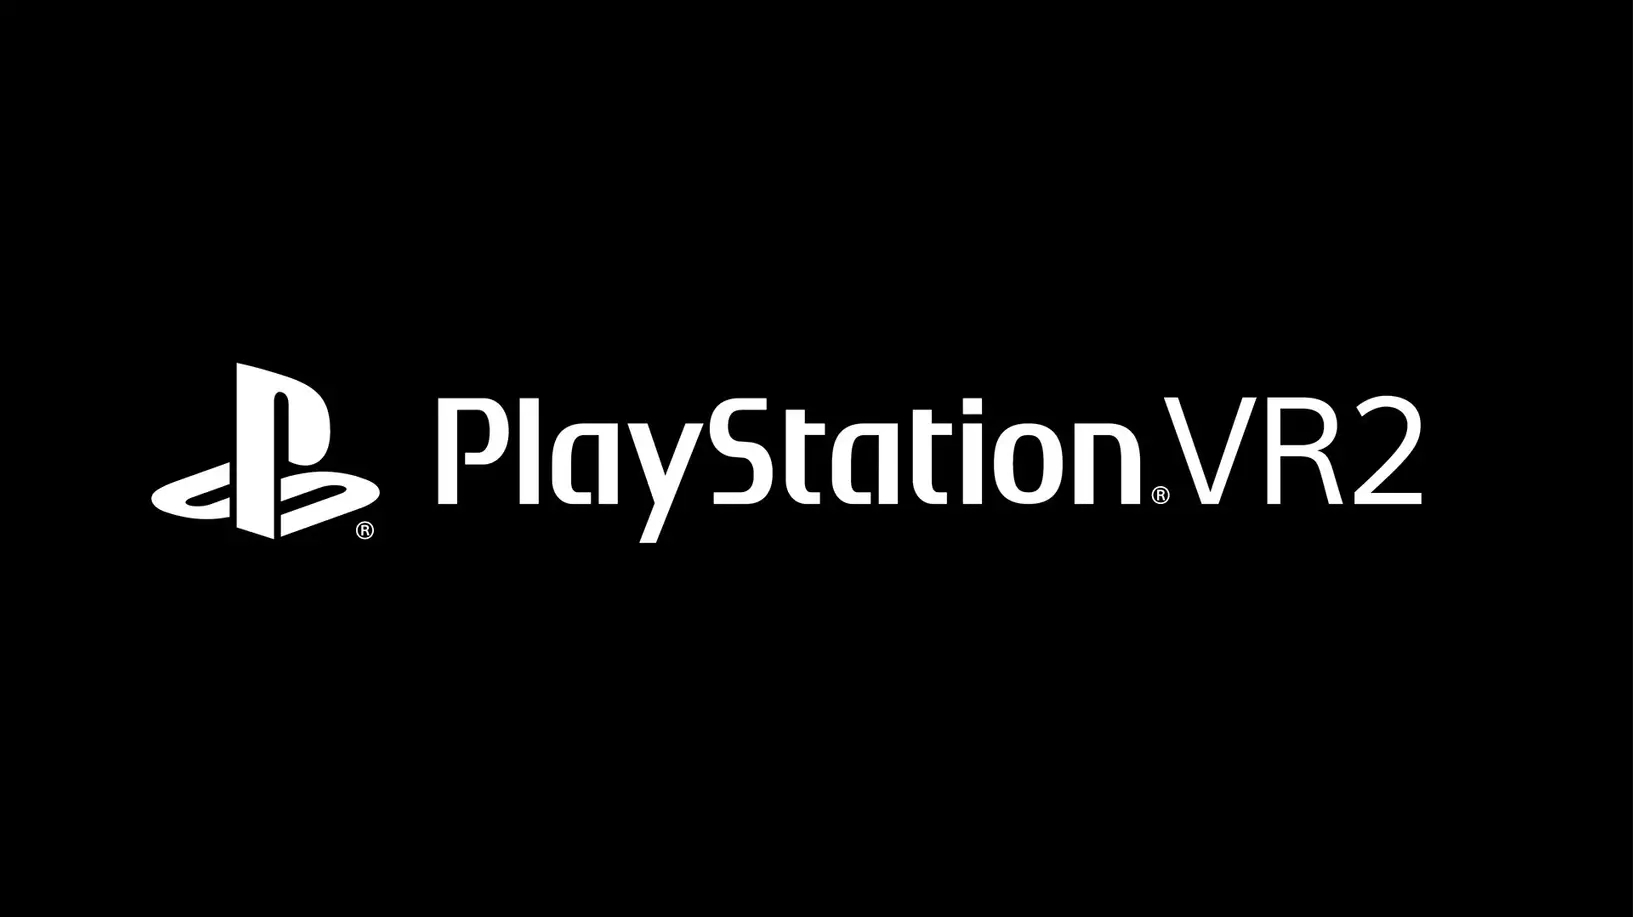 playstation vr2, Playstation VR2 anunciado e é acompanhado de um novo jogo VR da série Horizon